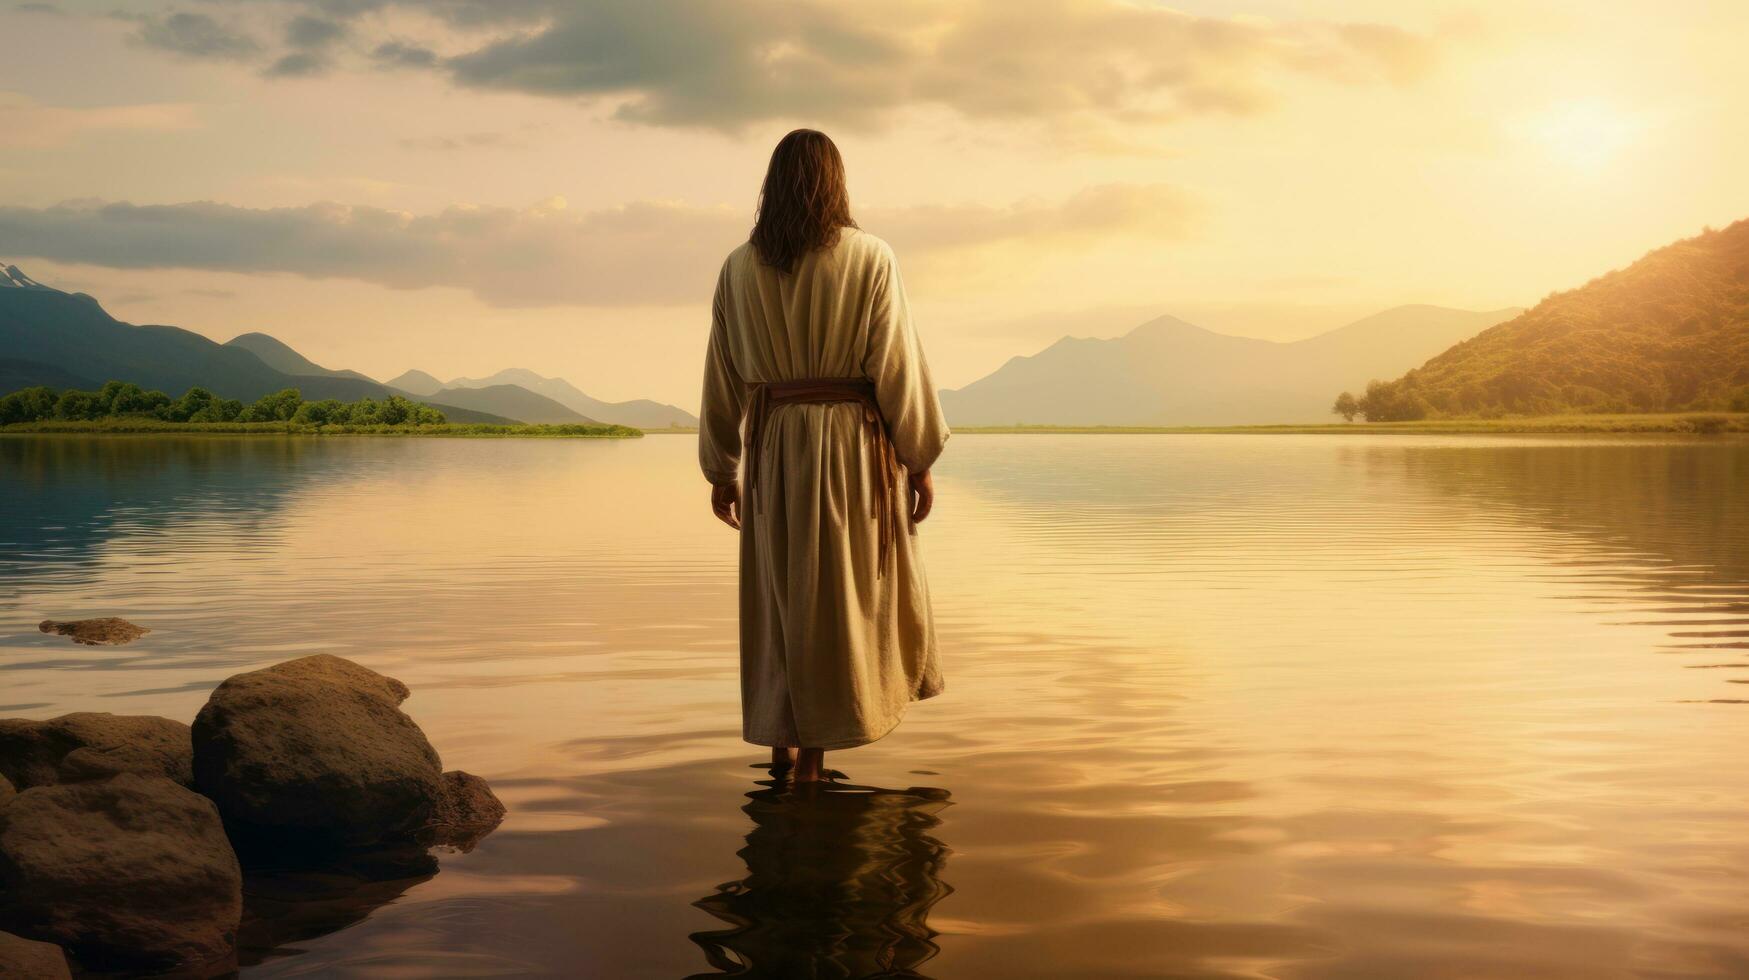 Jesus caminhando em direção a uma canoa dentro a lago foto